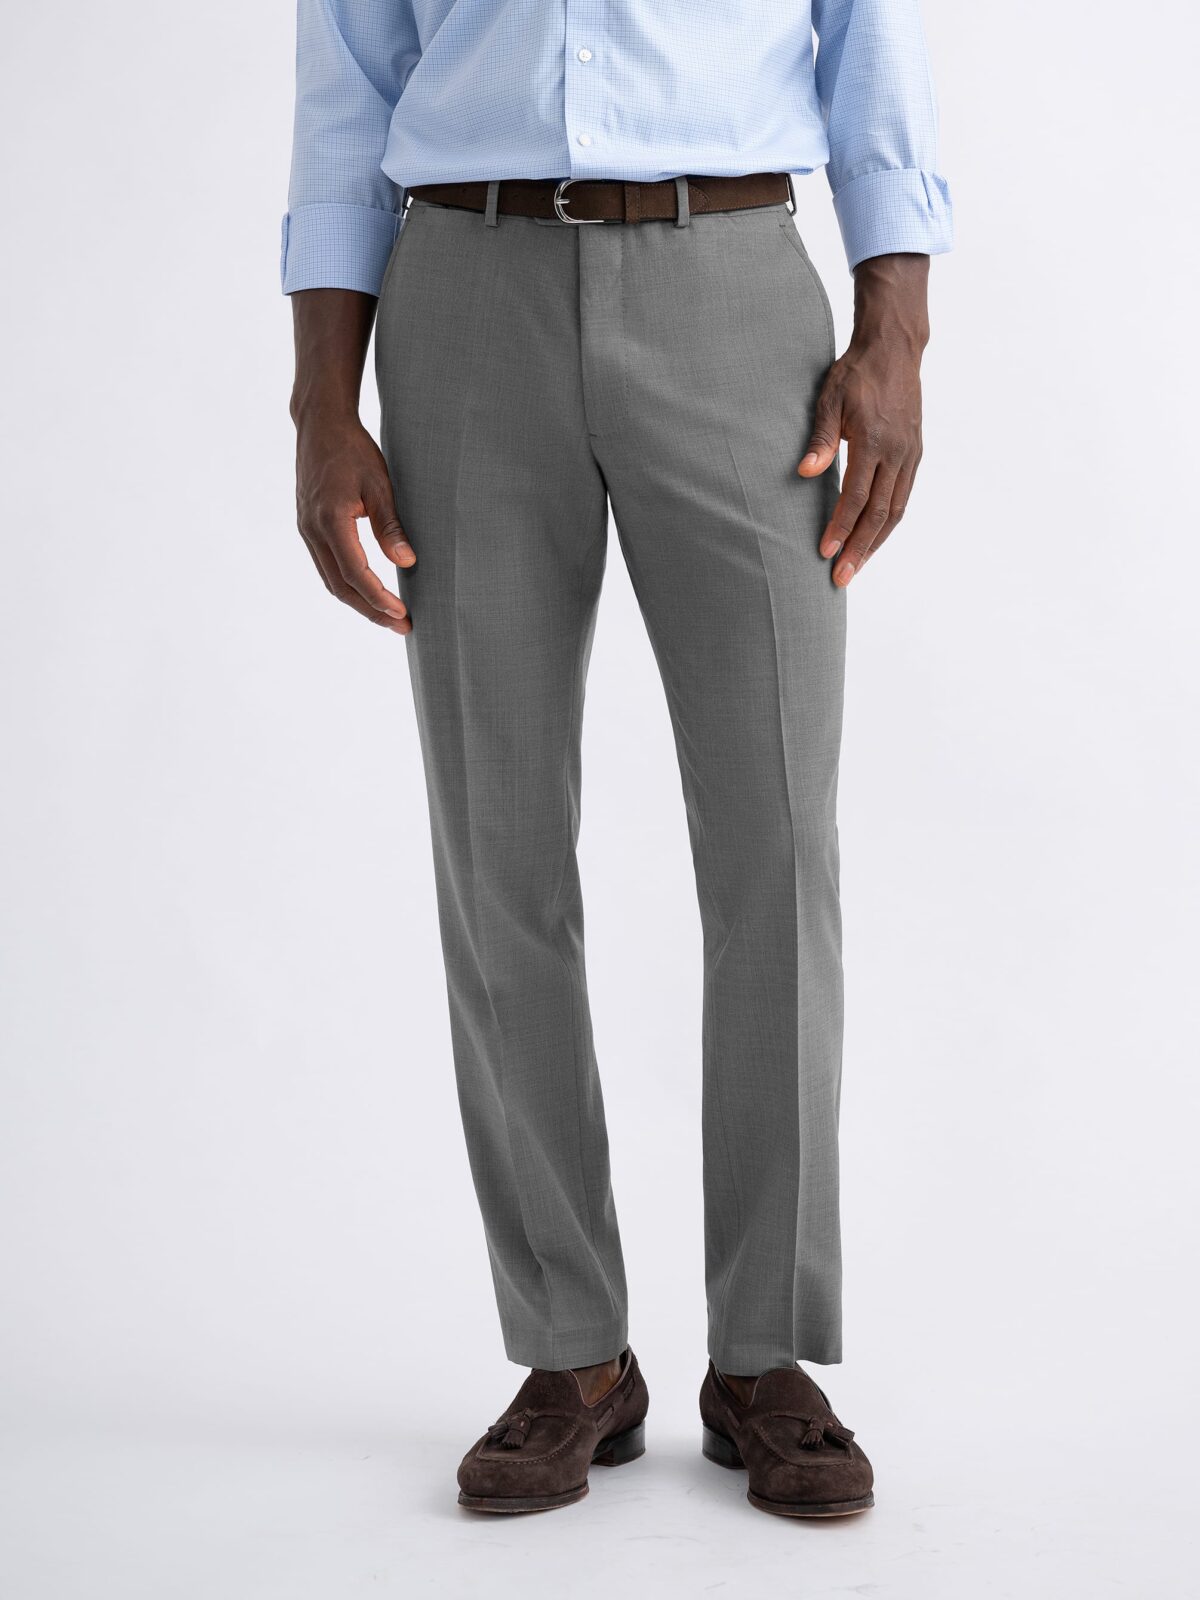 Haggar H26 Men's Premium Stretch Slim Fit Dress Pants - Black 28x30 : Target